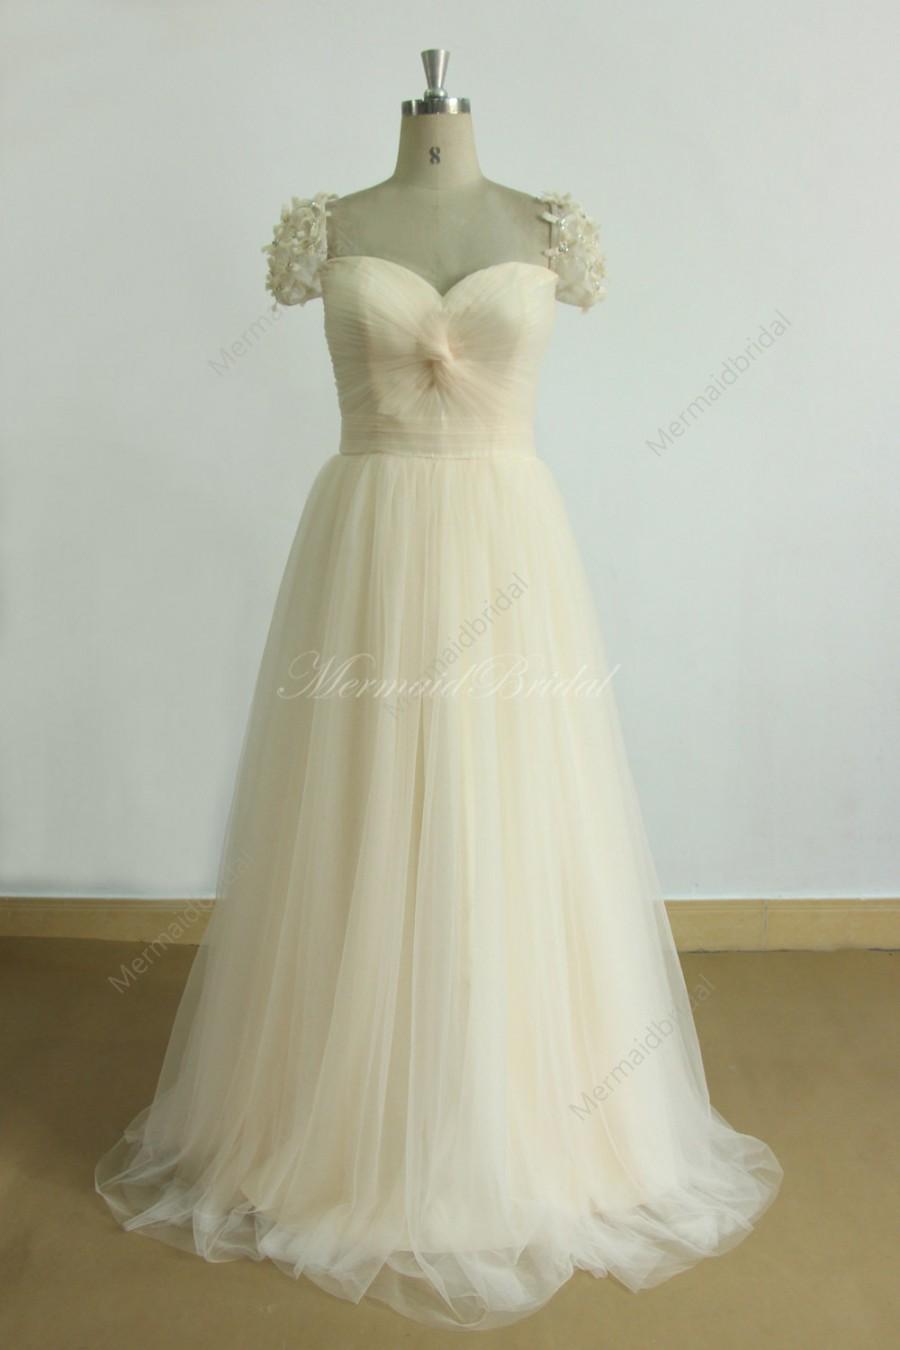 زفاف - Cream/light champagne a line tulle wedding dress with cap sleeves